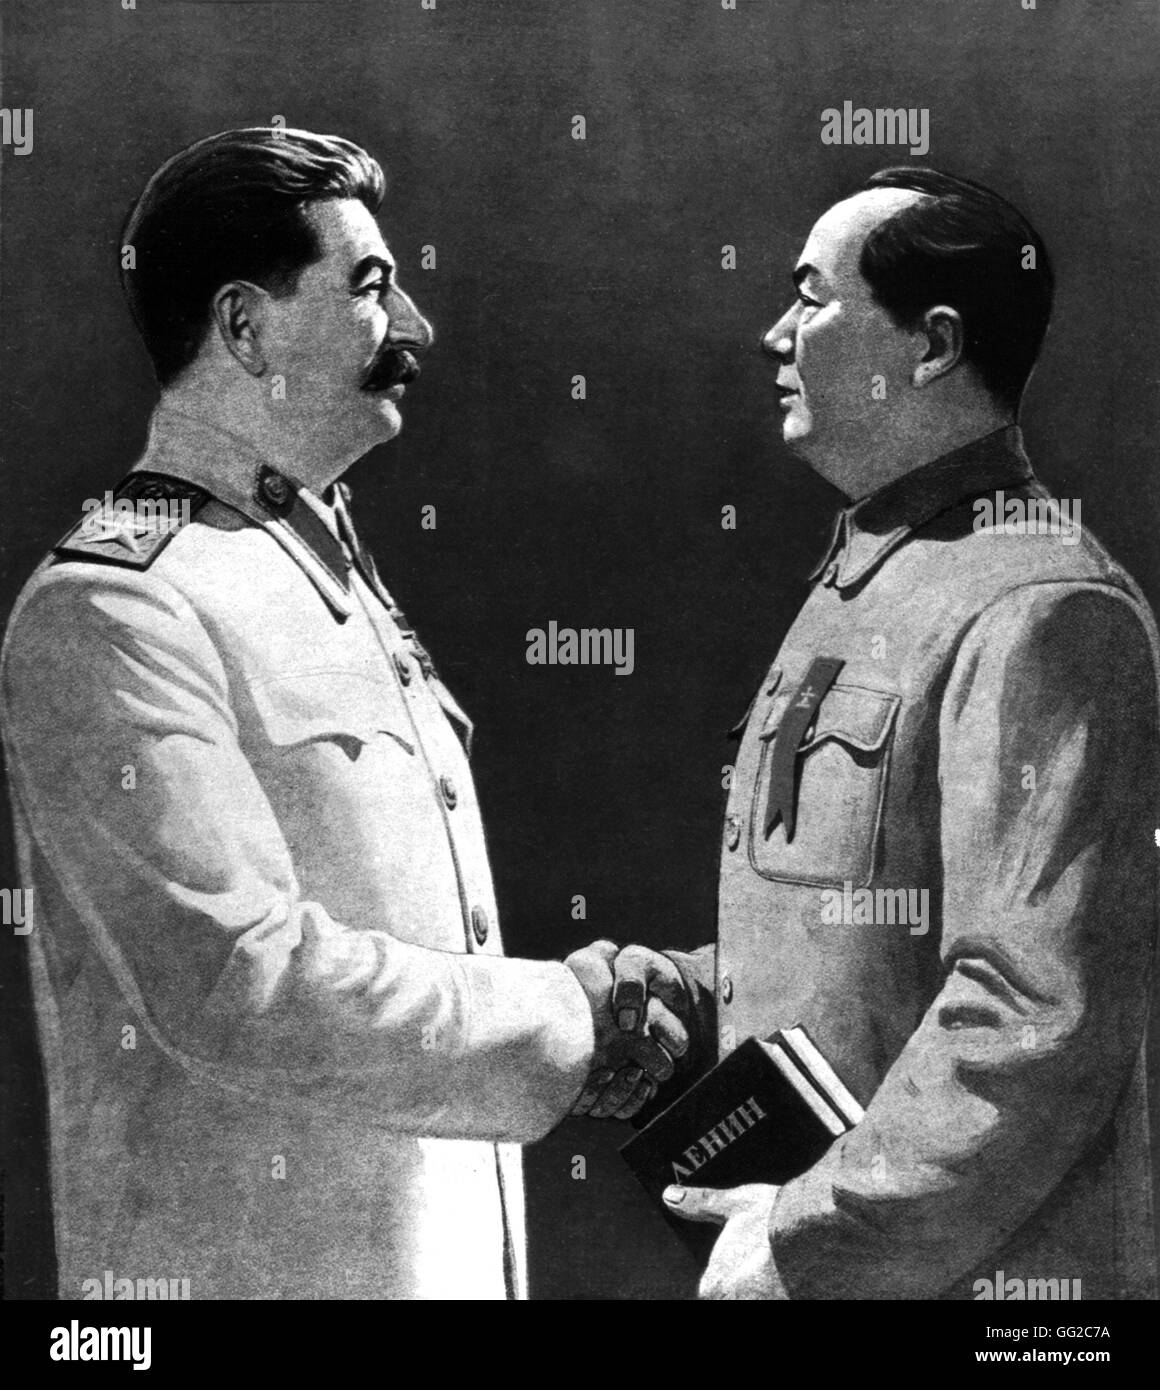 Affiche de propagande. Staline et Mao : "Vive l'amitié indestructible et coopération" c.1950 URSS Banque D'Images